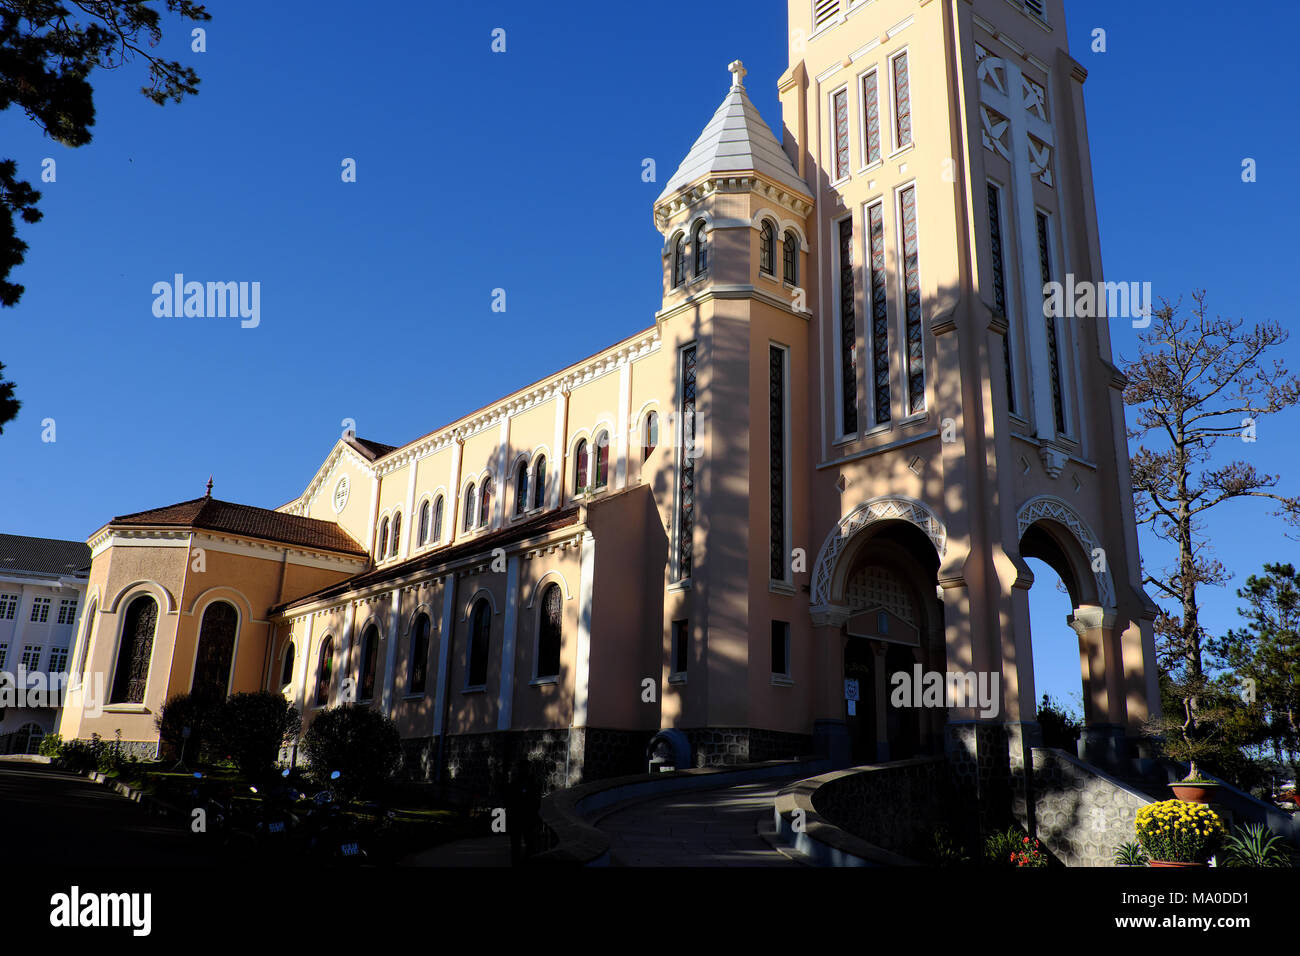 Da Lat, une ancienne cathédrale d'oeuvres d'architecture, d'architecture classique française, Église de poulet style Dalat avec statue de coq sur le haut clocher Banque D'Images